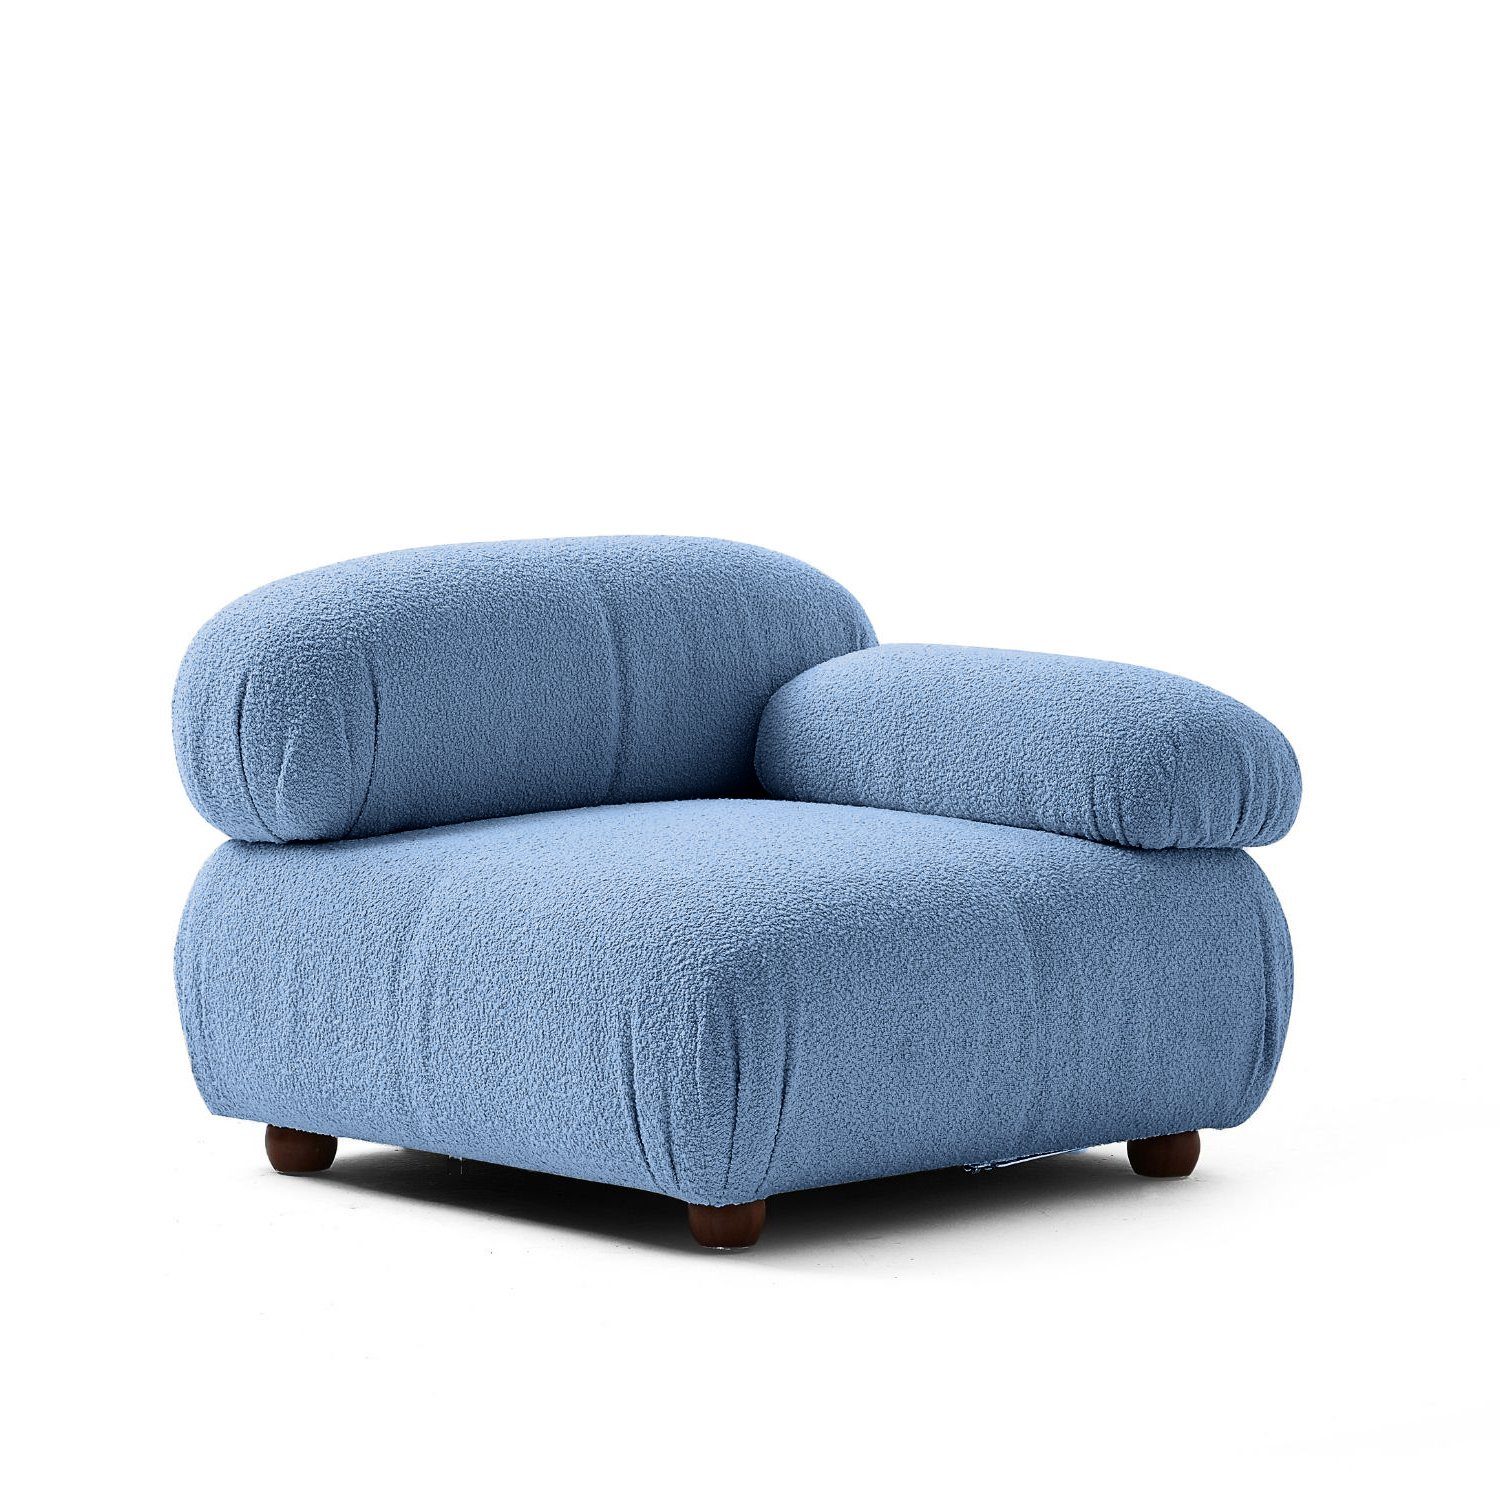 und Knuffiges im neueste Preis Komfortschaum aus enthalten! Touch Aufbau me Blau-Marine-Lieferung Sitzmöbel Sofa Generation